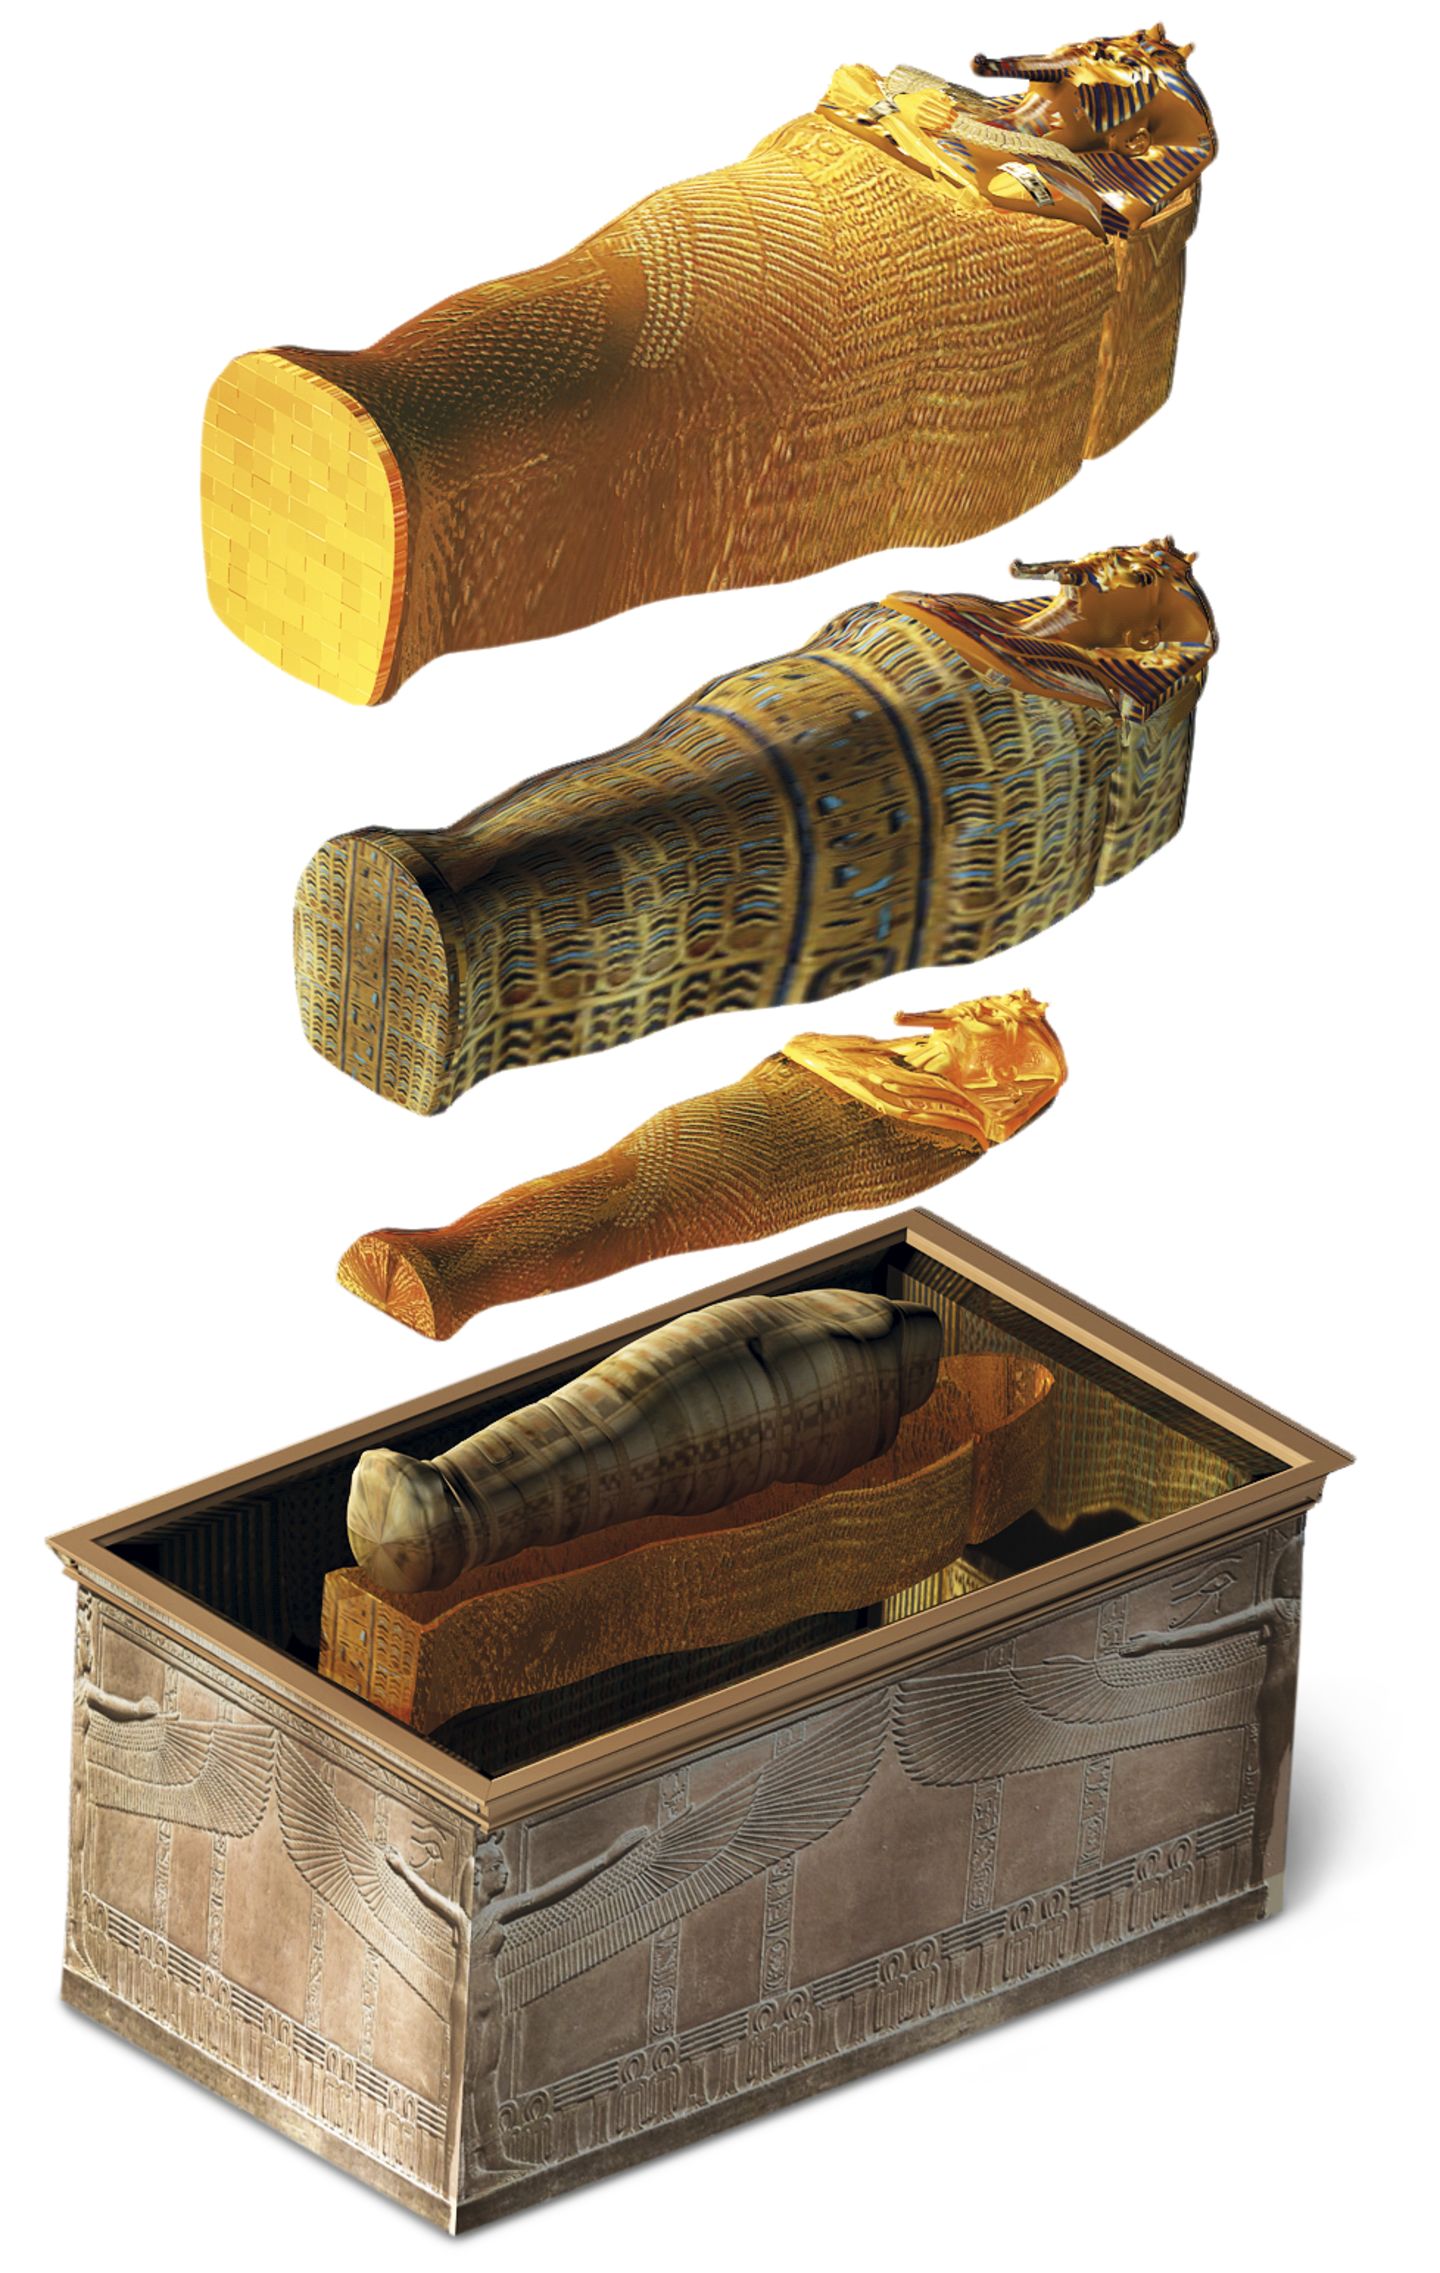 Bí ẩn về nguồn gốc của những xác ướp Ai Cập, tại sao chúng có thể tồn tại hàng nghìn năm? - Ảnh 7.